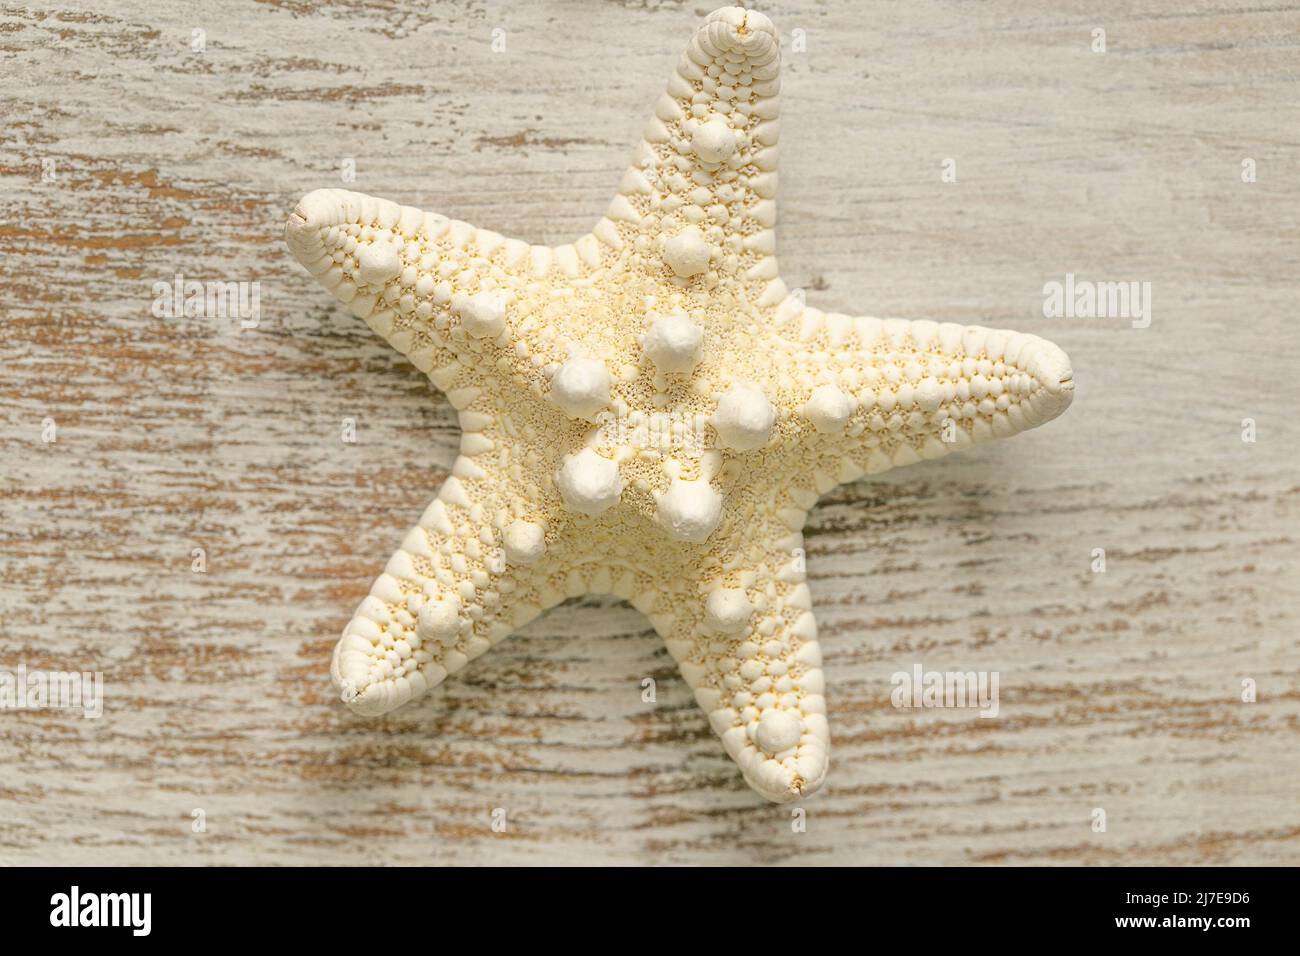 Fond d'écran marin. Étoiles de mer beige sur fond blanc chic. Décor nautique d'été. Arrière-plan dans un style marin dans des tons blancs et beiges Banque D'Images